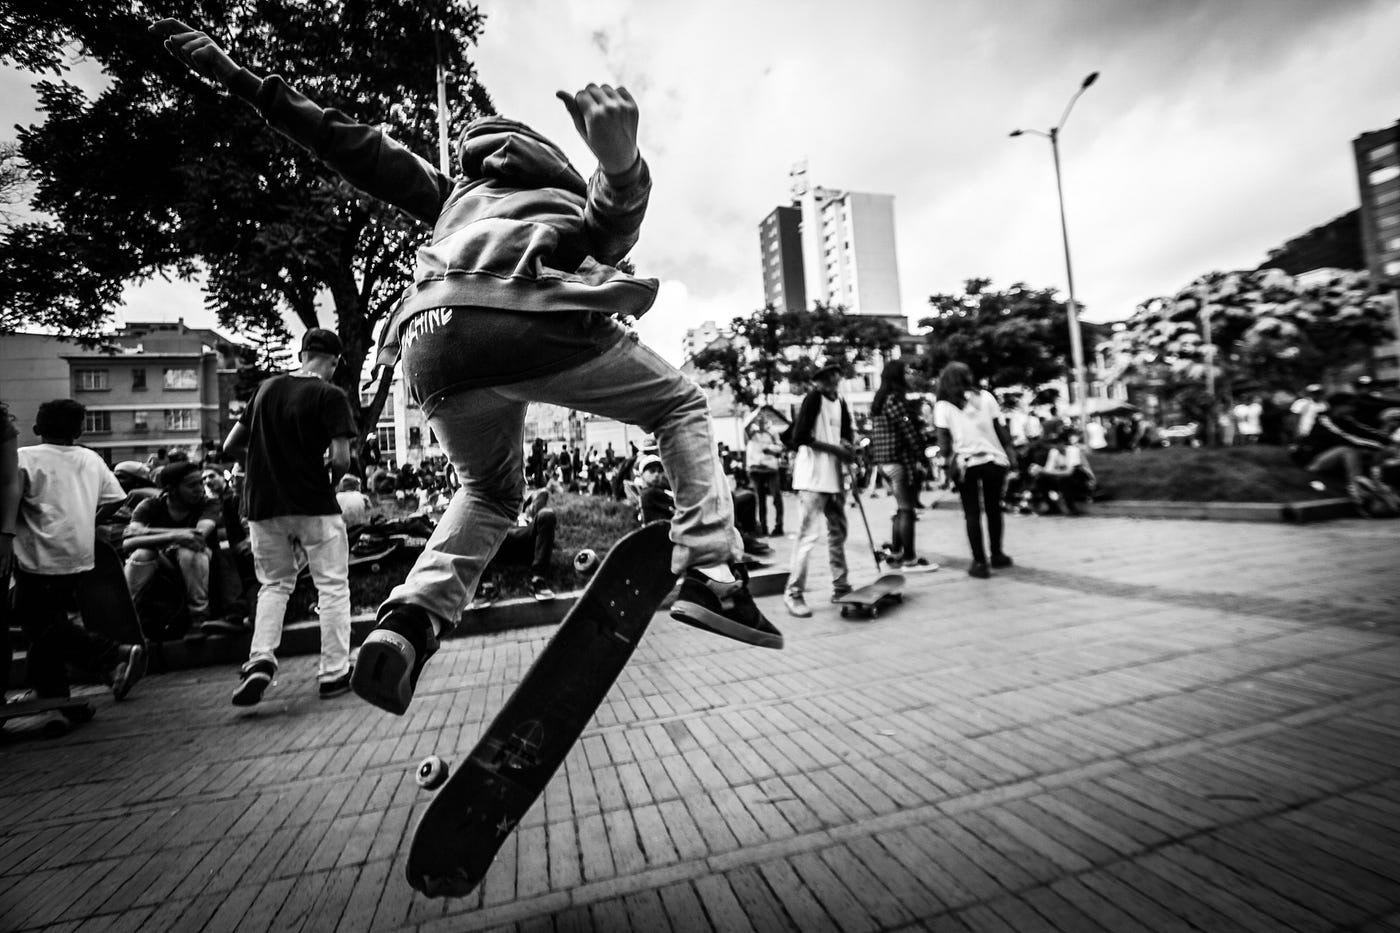 Skaters en un mundo de prejuicios | by Daniela Islas | Medium